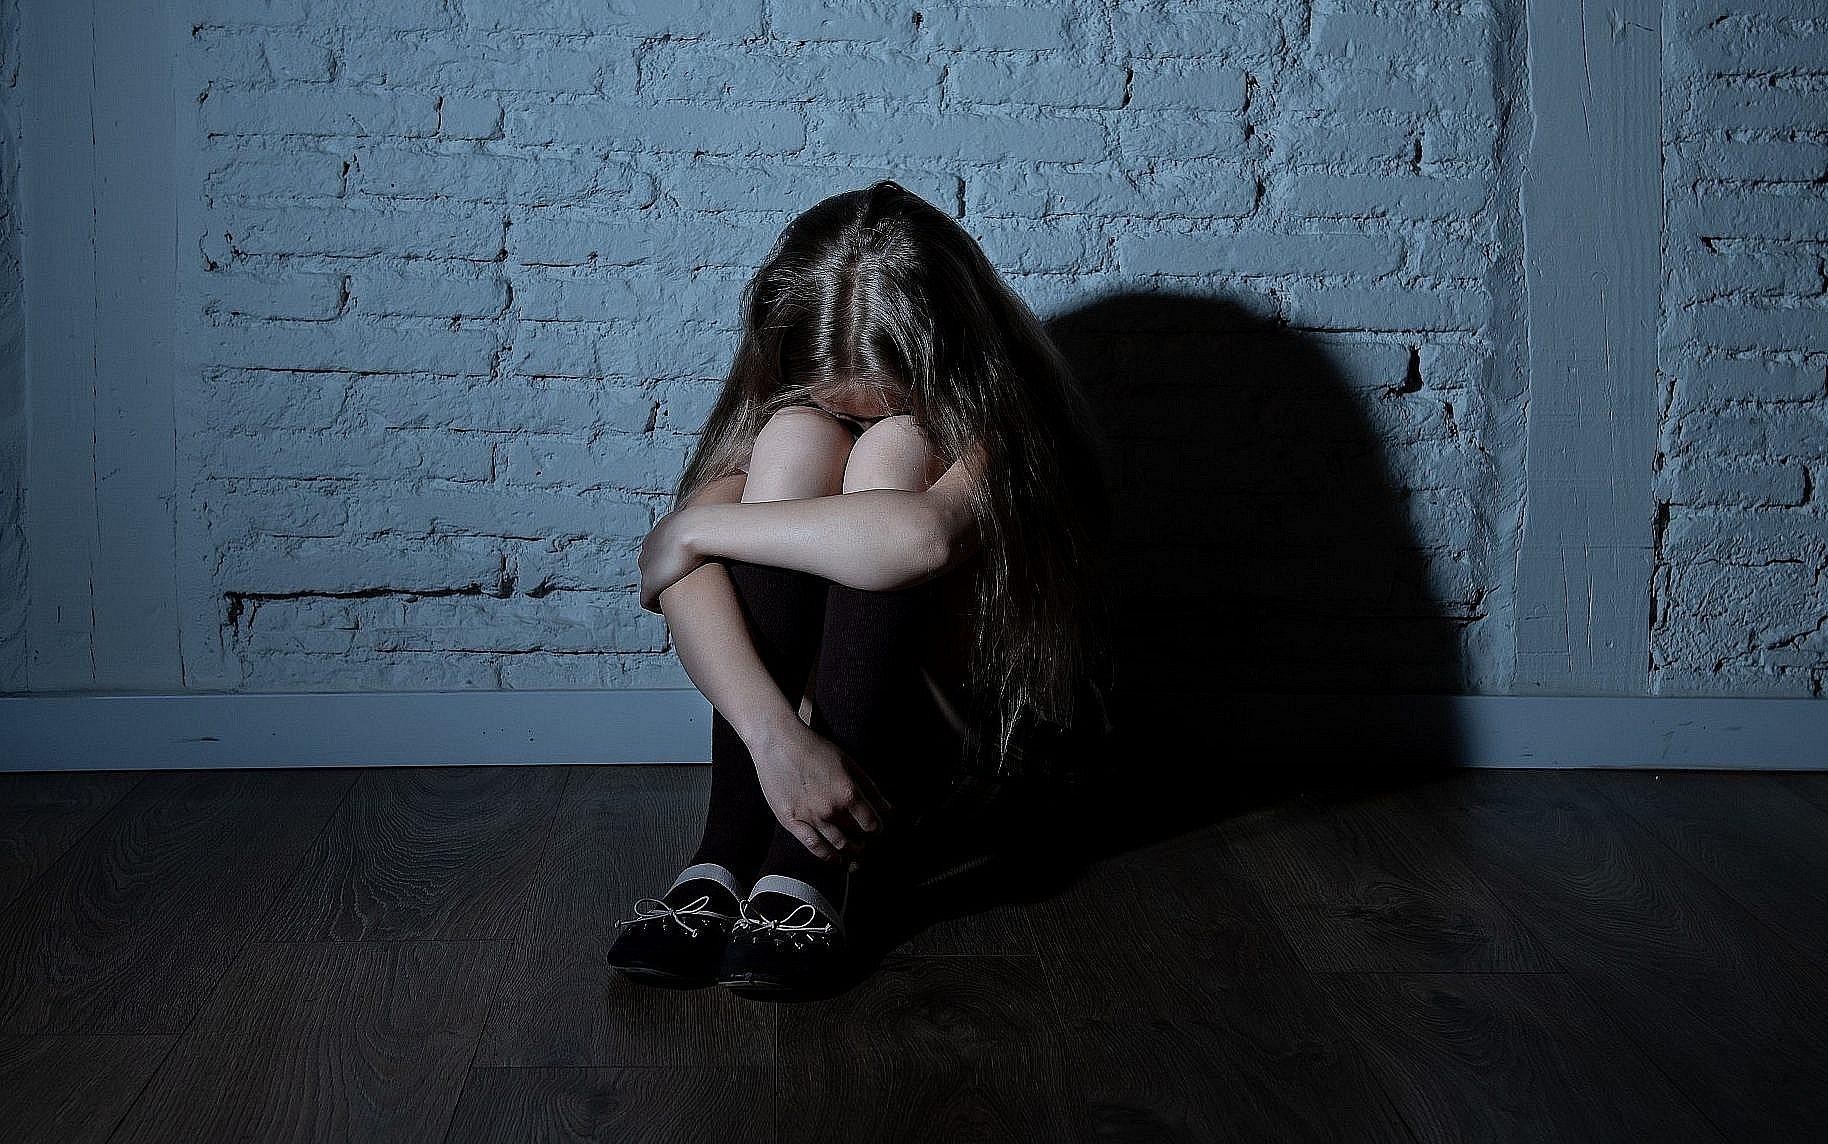 Bidello psicologicamente fragile abusava di minori: incubo a Brescia